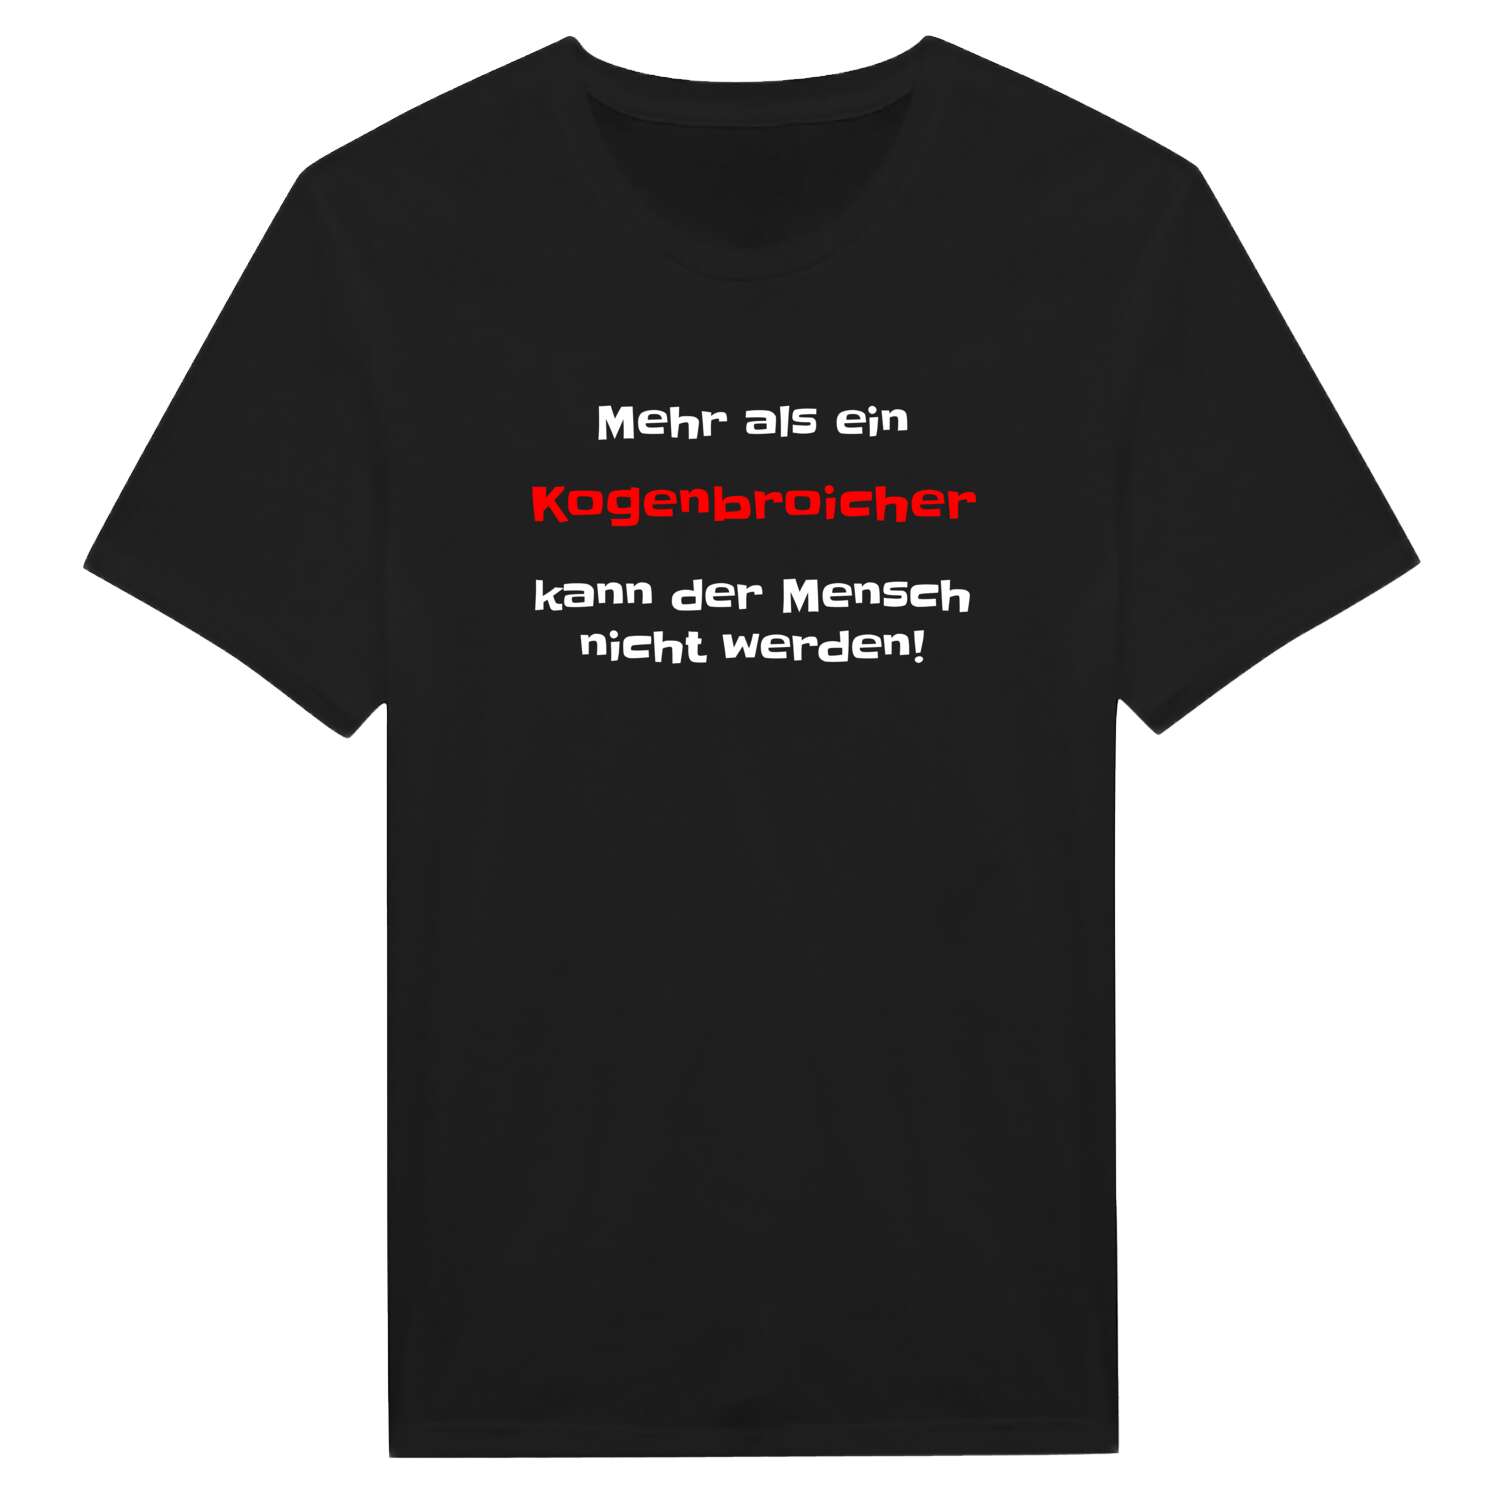 Kogenbroich T-Shirt »Mehr als ein«